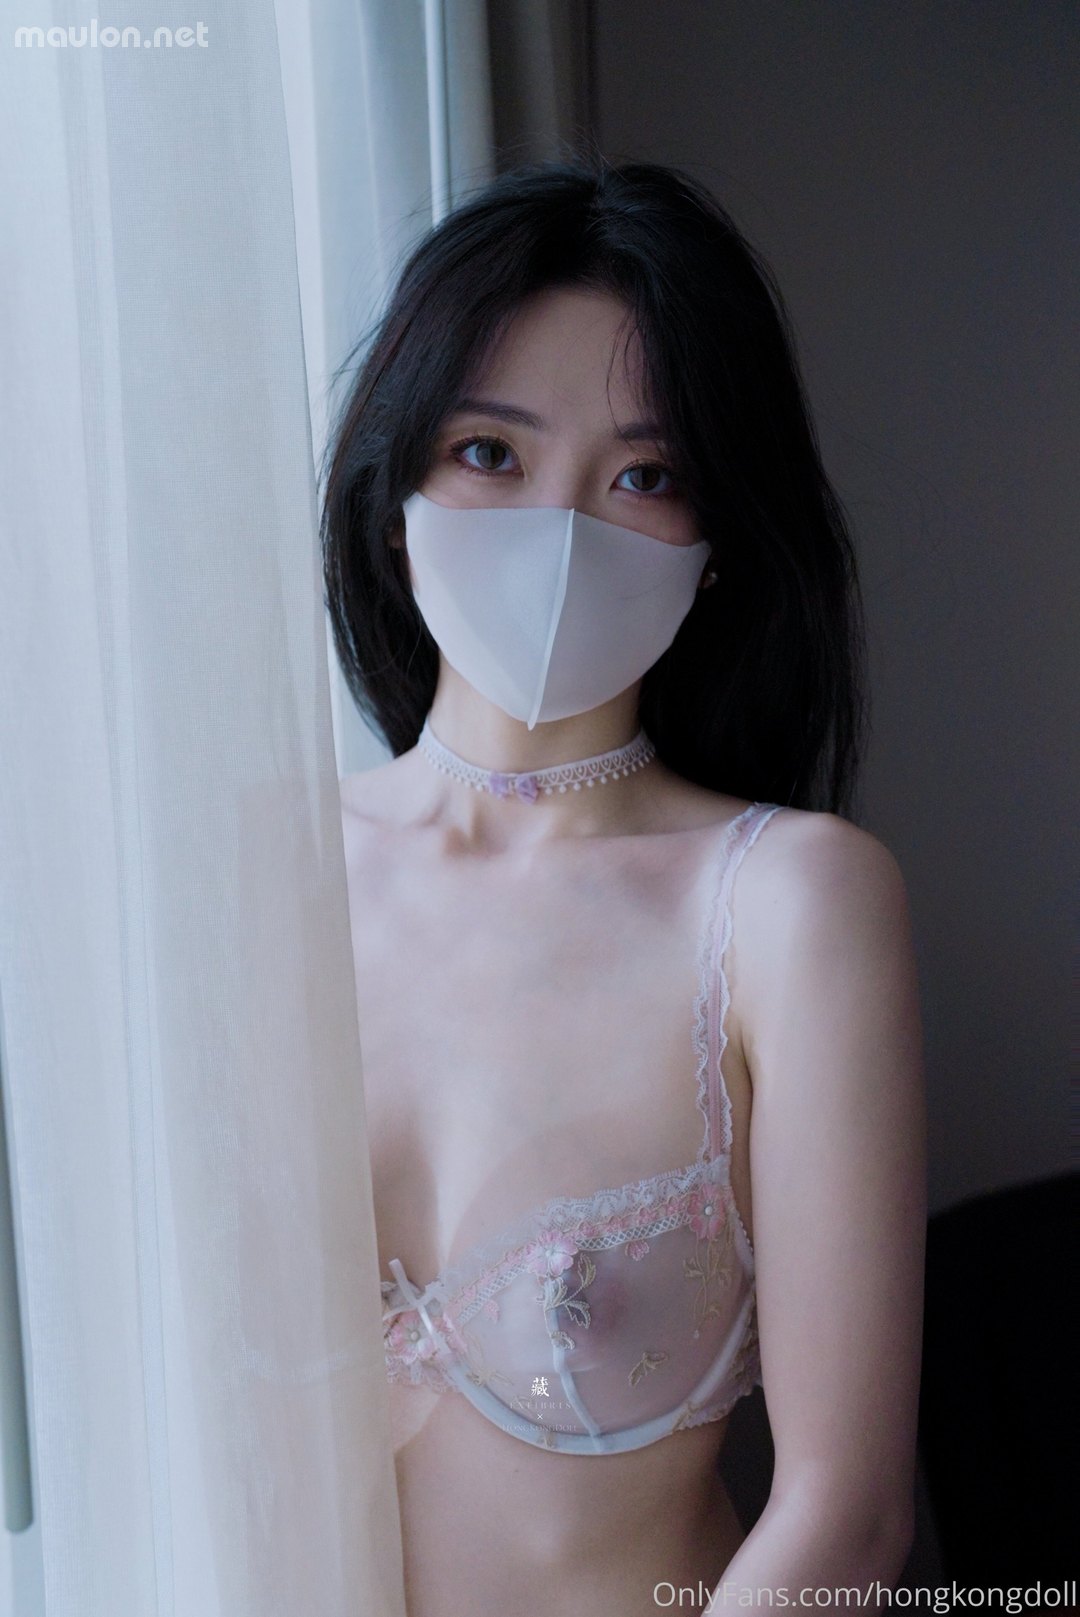 MauLon.Net - Ảnh sex HongKongDoll - muốn một mình nhưng sợ lên cơn